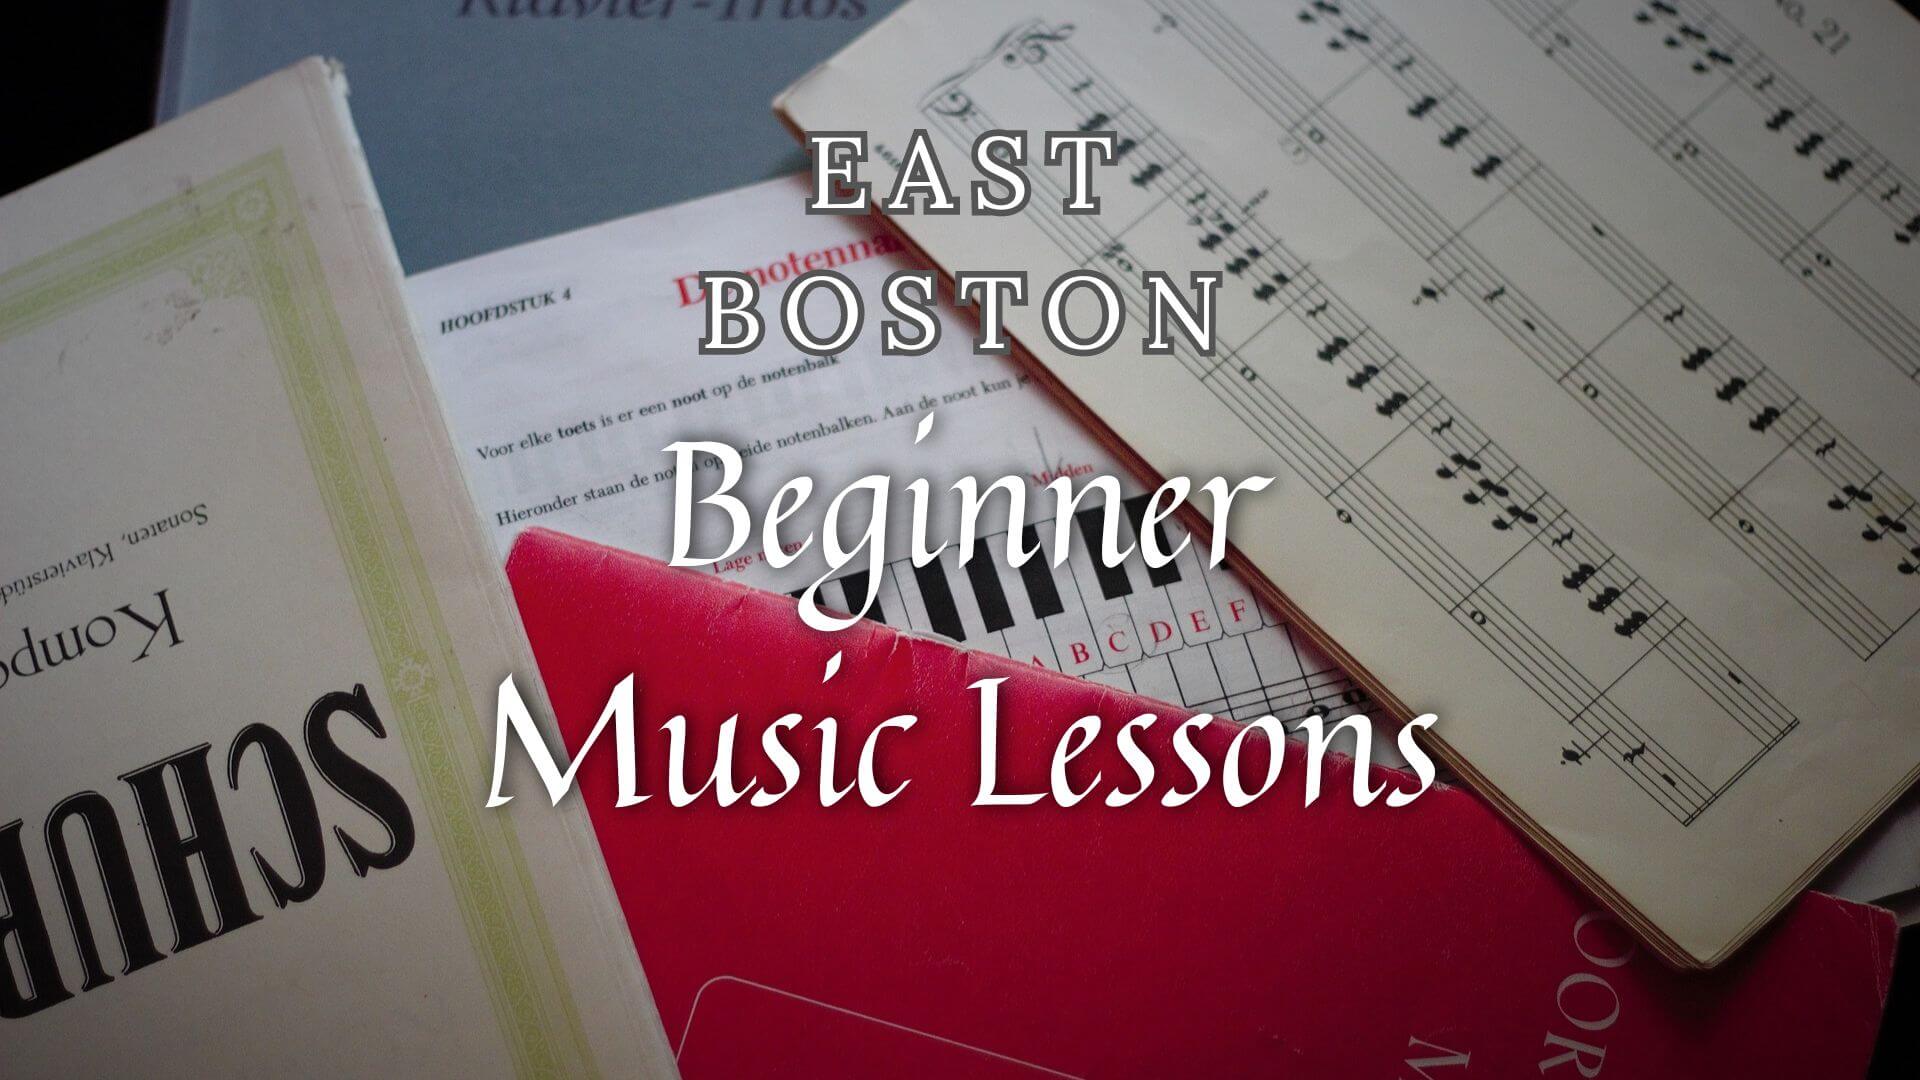 Beginner-Friendly Music Classes in East Boston, Massachusetts